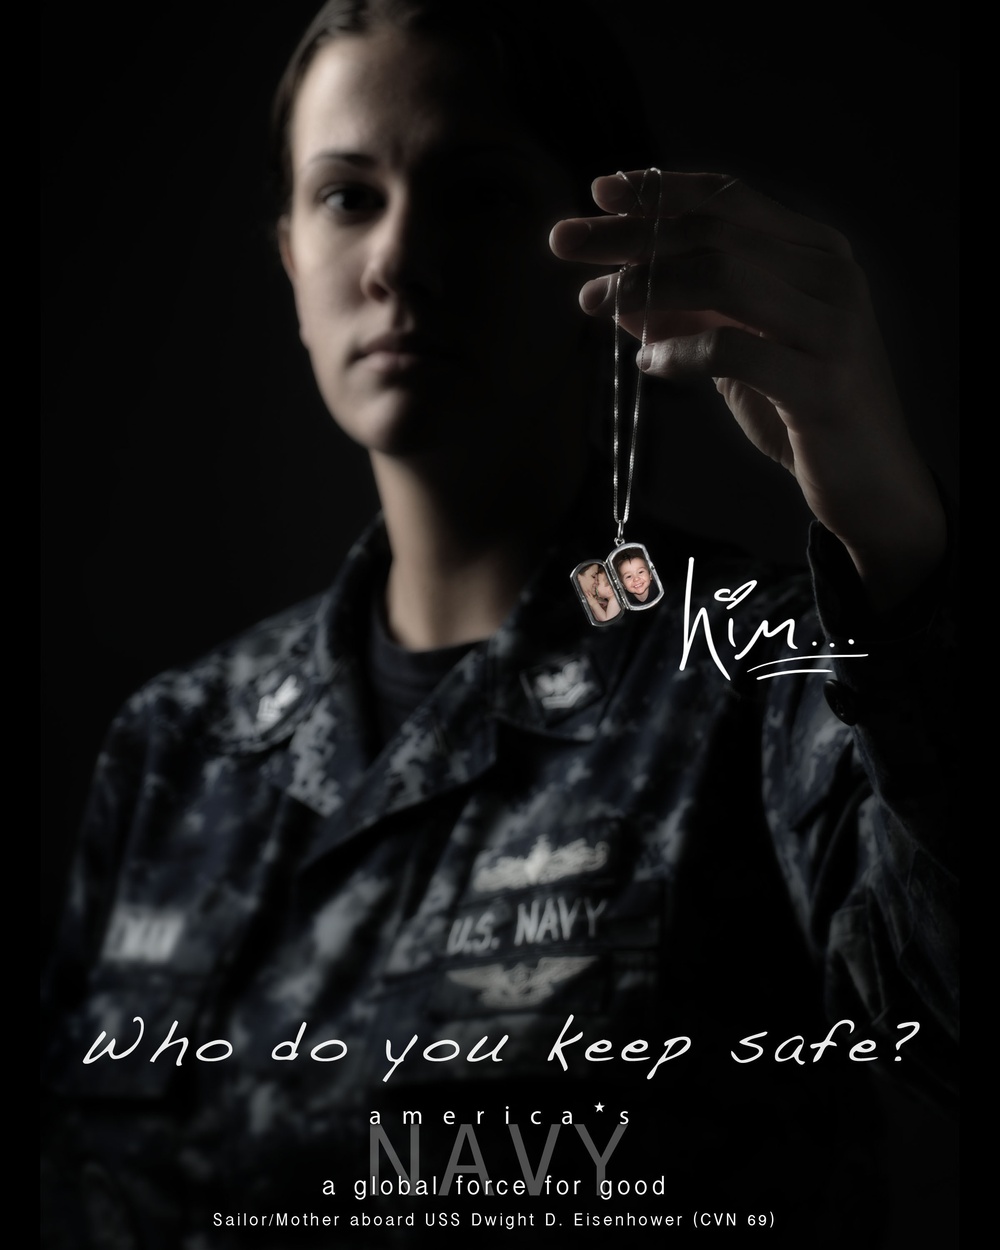 USS Dwight D. Eisenhower 2010 deployment poster